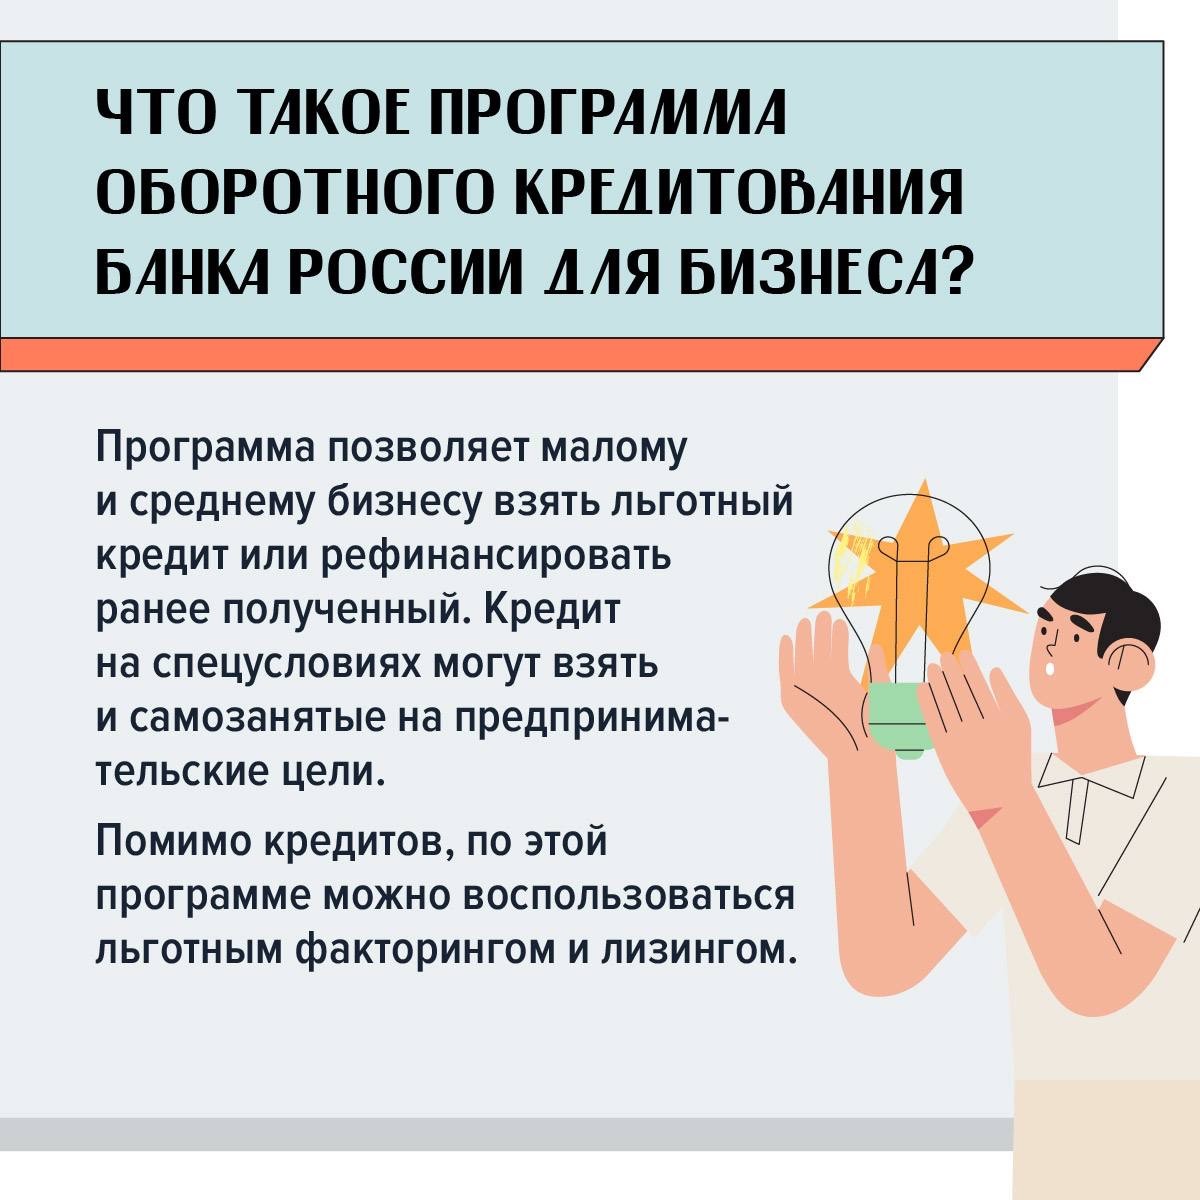 Программа оборотного кредитования Банка России, поможет бизнесу взять льготный кредит, рефинансировать старый или воспользоваться льготным лизингом или факторингом.